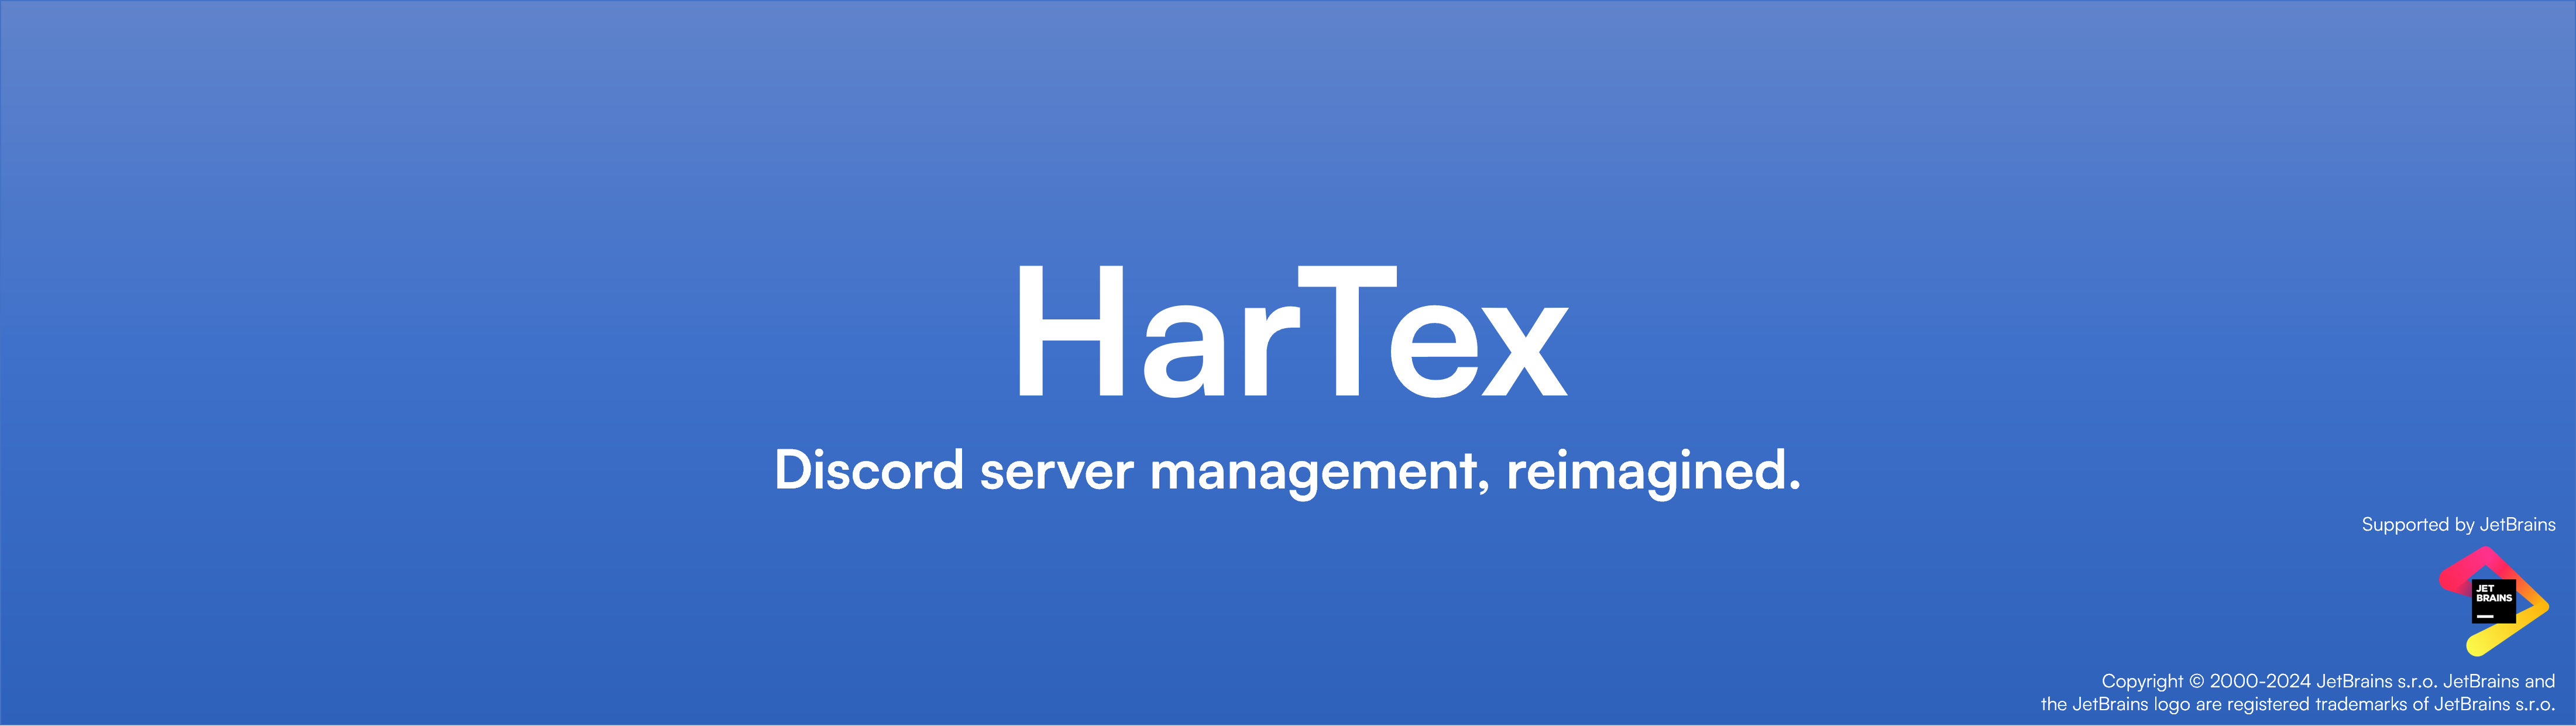 HarTex